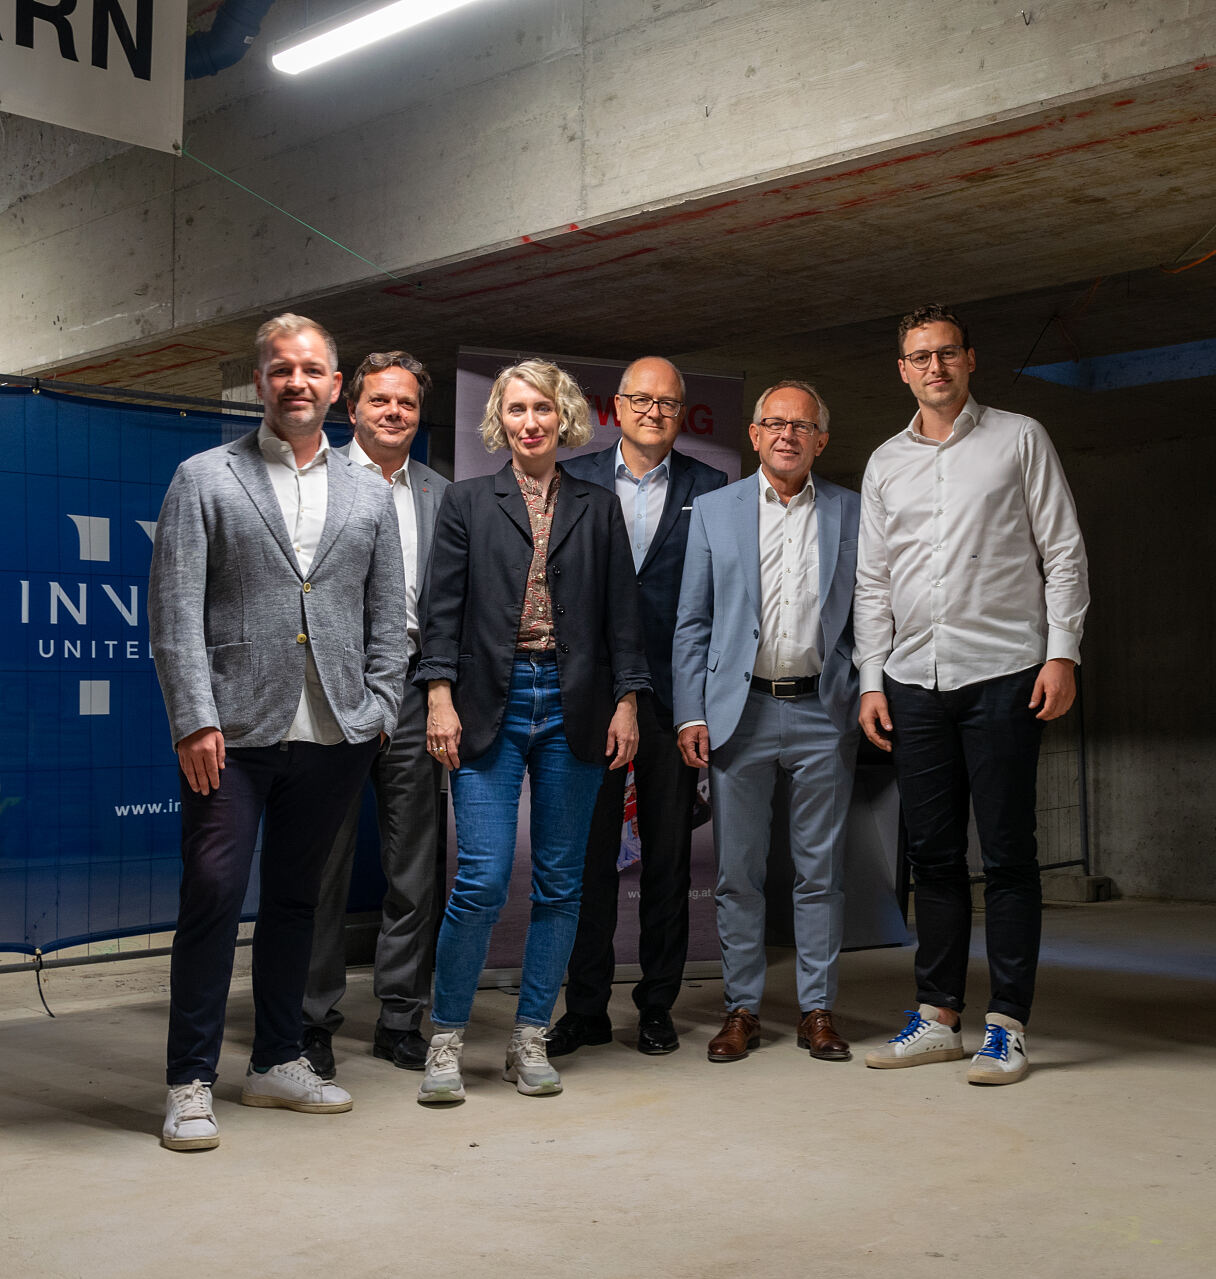 Die führenden Köpfe hinter dem Wohnbauprojekt in Wien Simmering vereint in der Tiefgarage für einen besonderen Moment